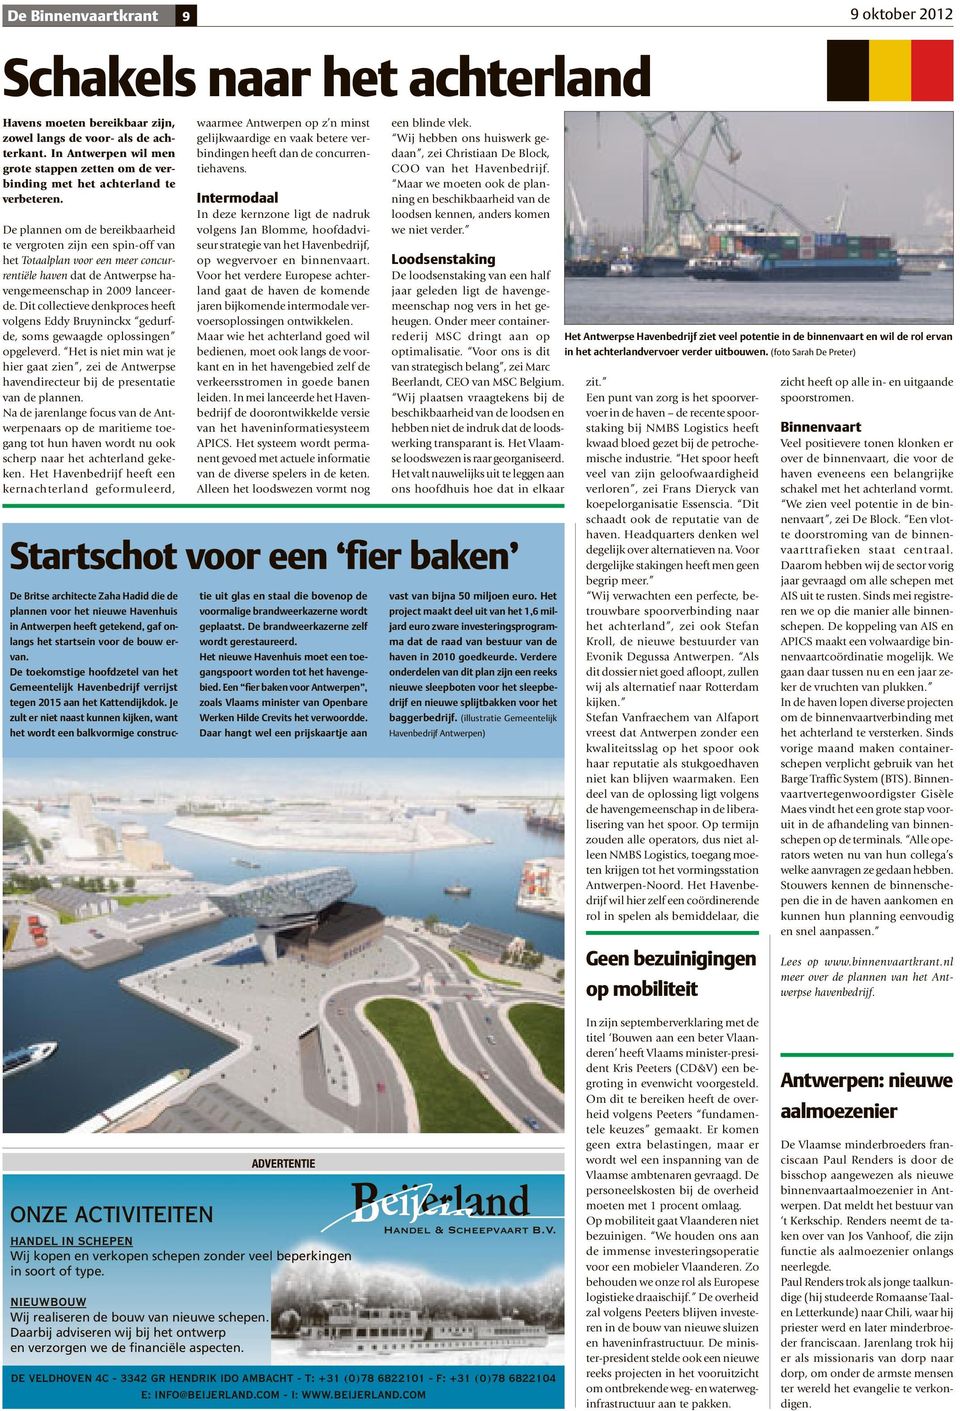 De plannen om de bereikbaarheid te vergroten zijn een spin-off van het Totaalplan voor een meer concurrentiële haven dat de Antwerpse havengemeenschap in 2009 lanceerde.